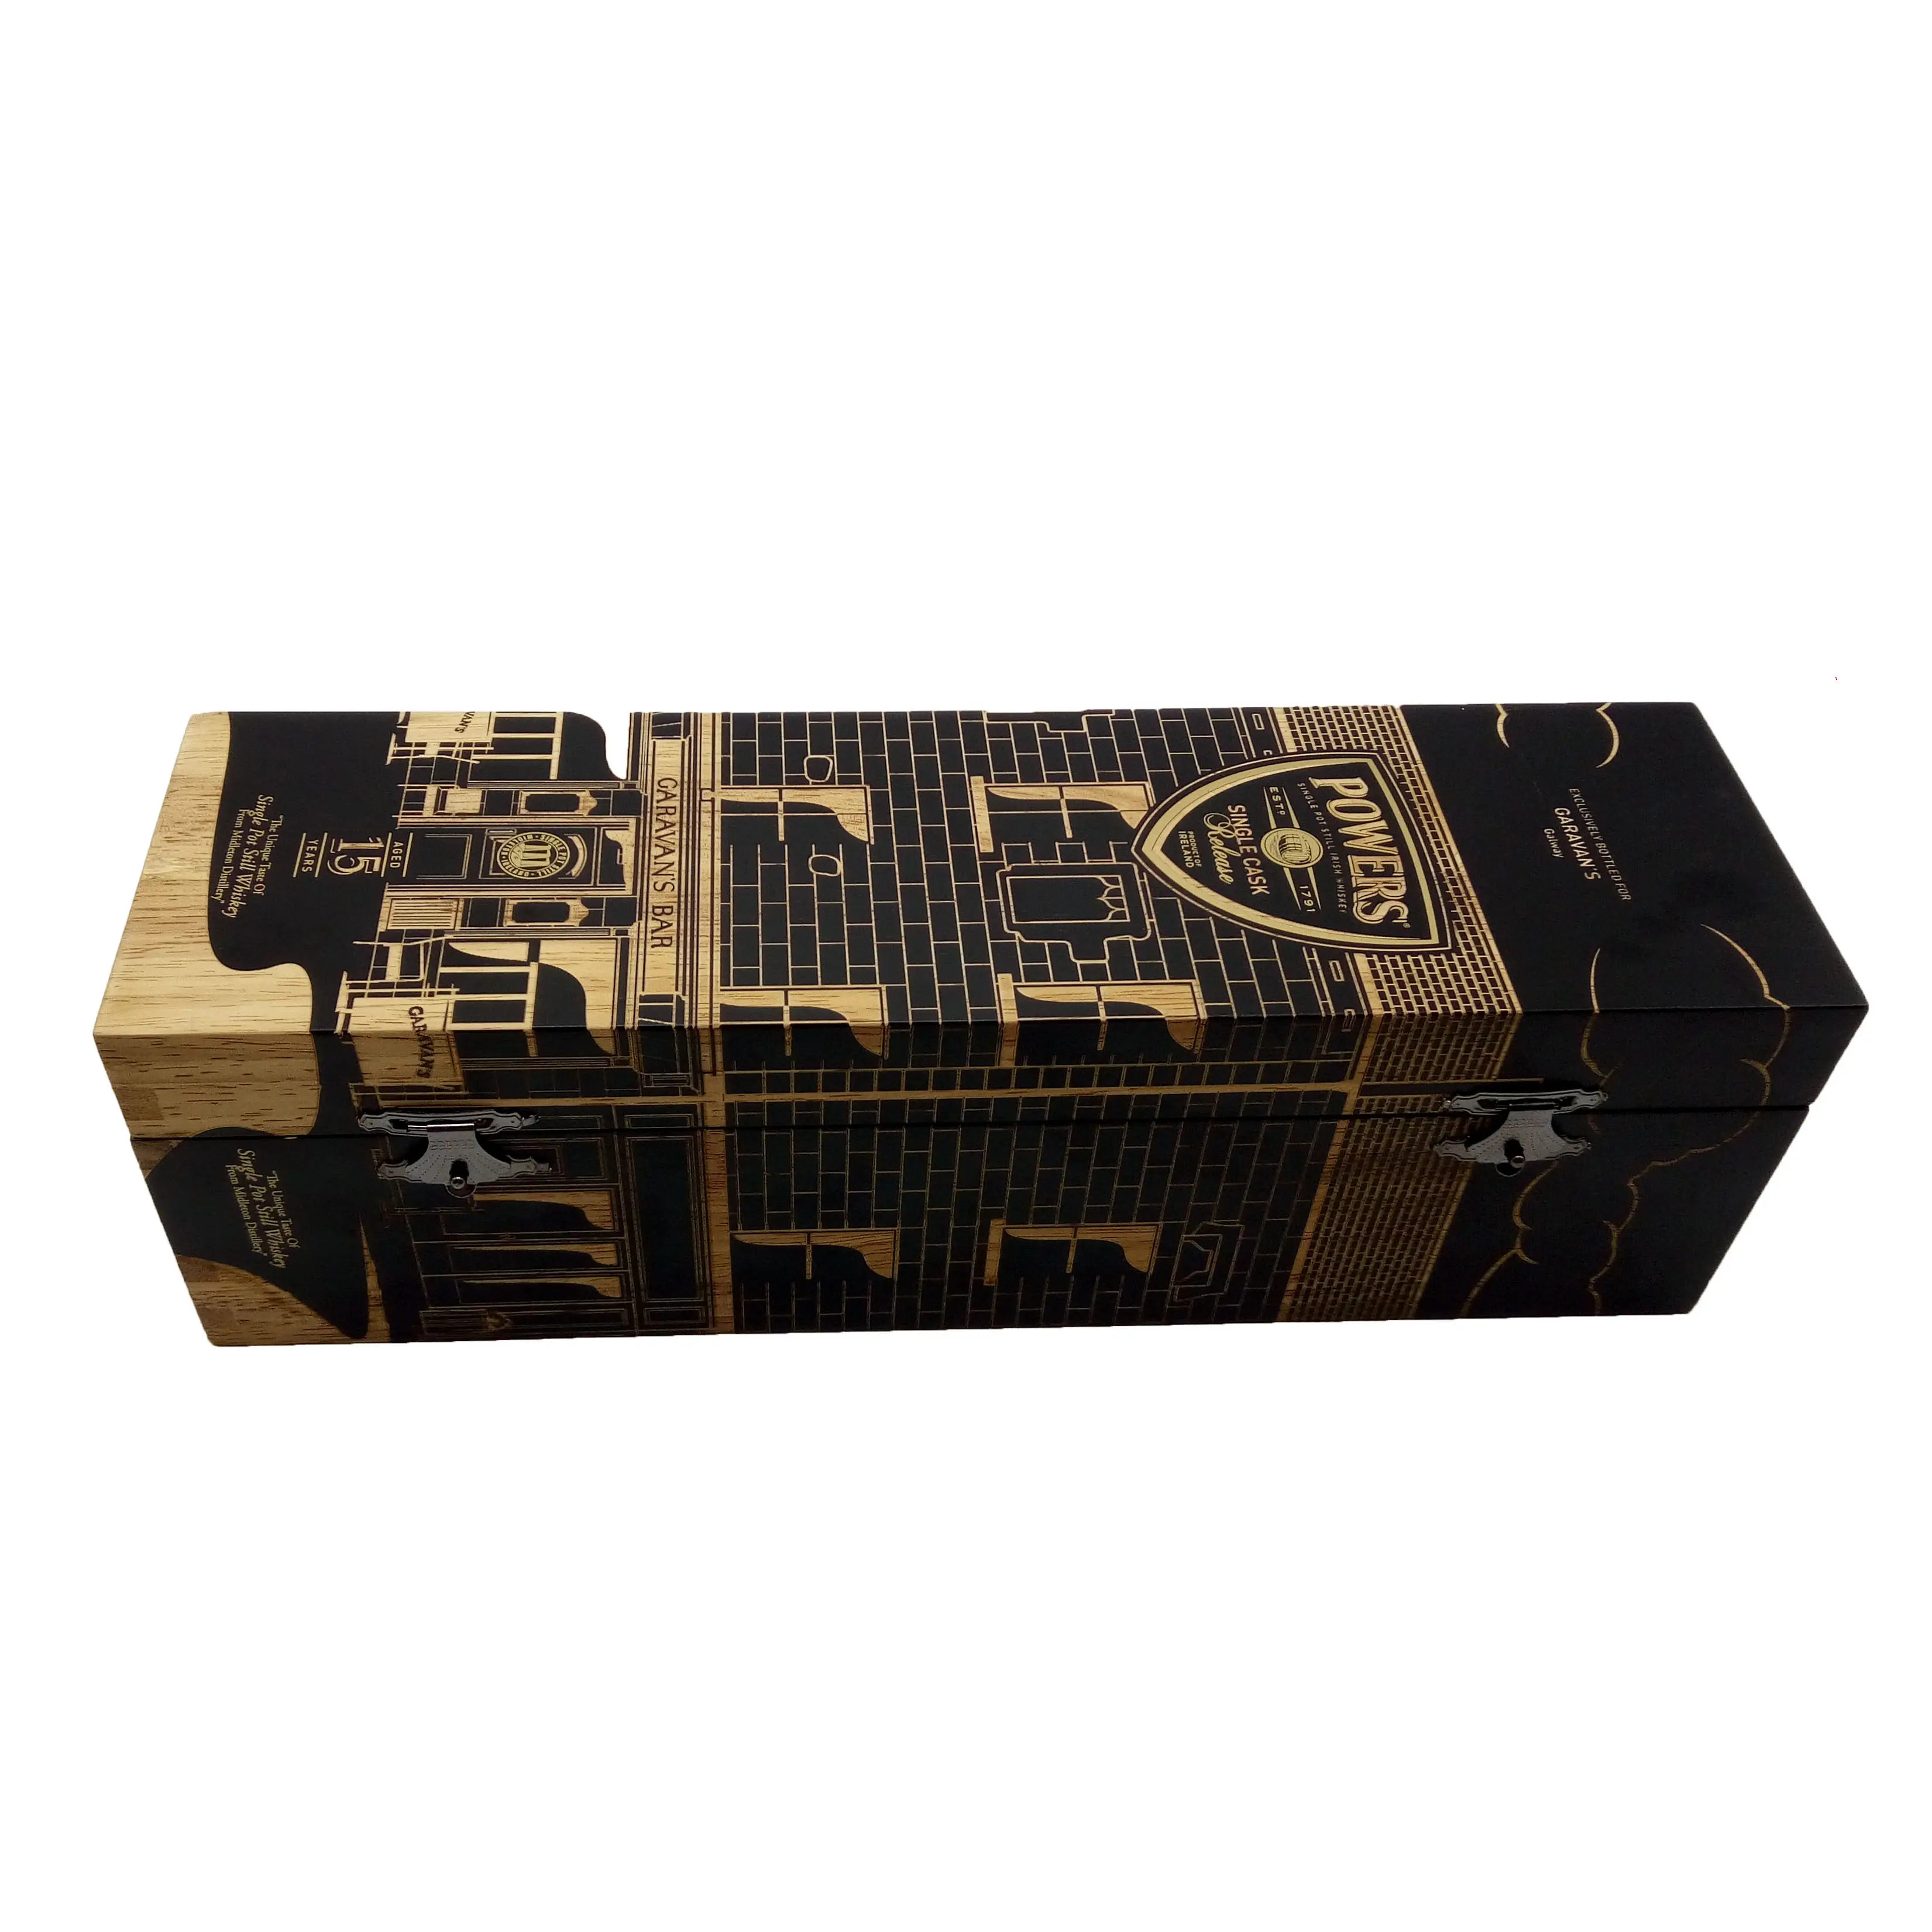 ポータブルカスタムサイズ木製ワイン包装ボックス輸送用木製ワインボックス中国